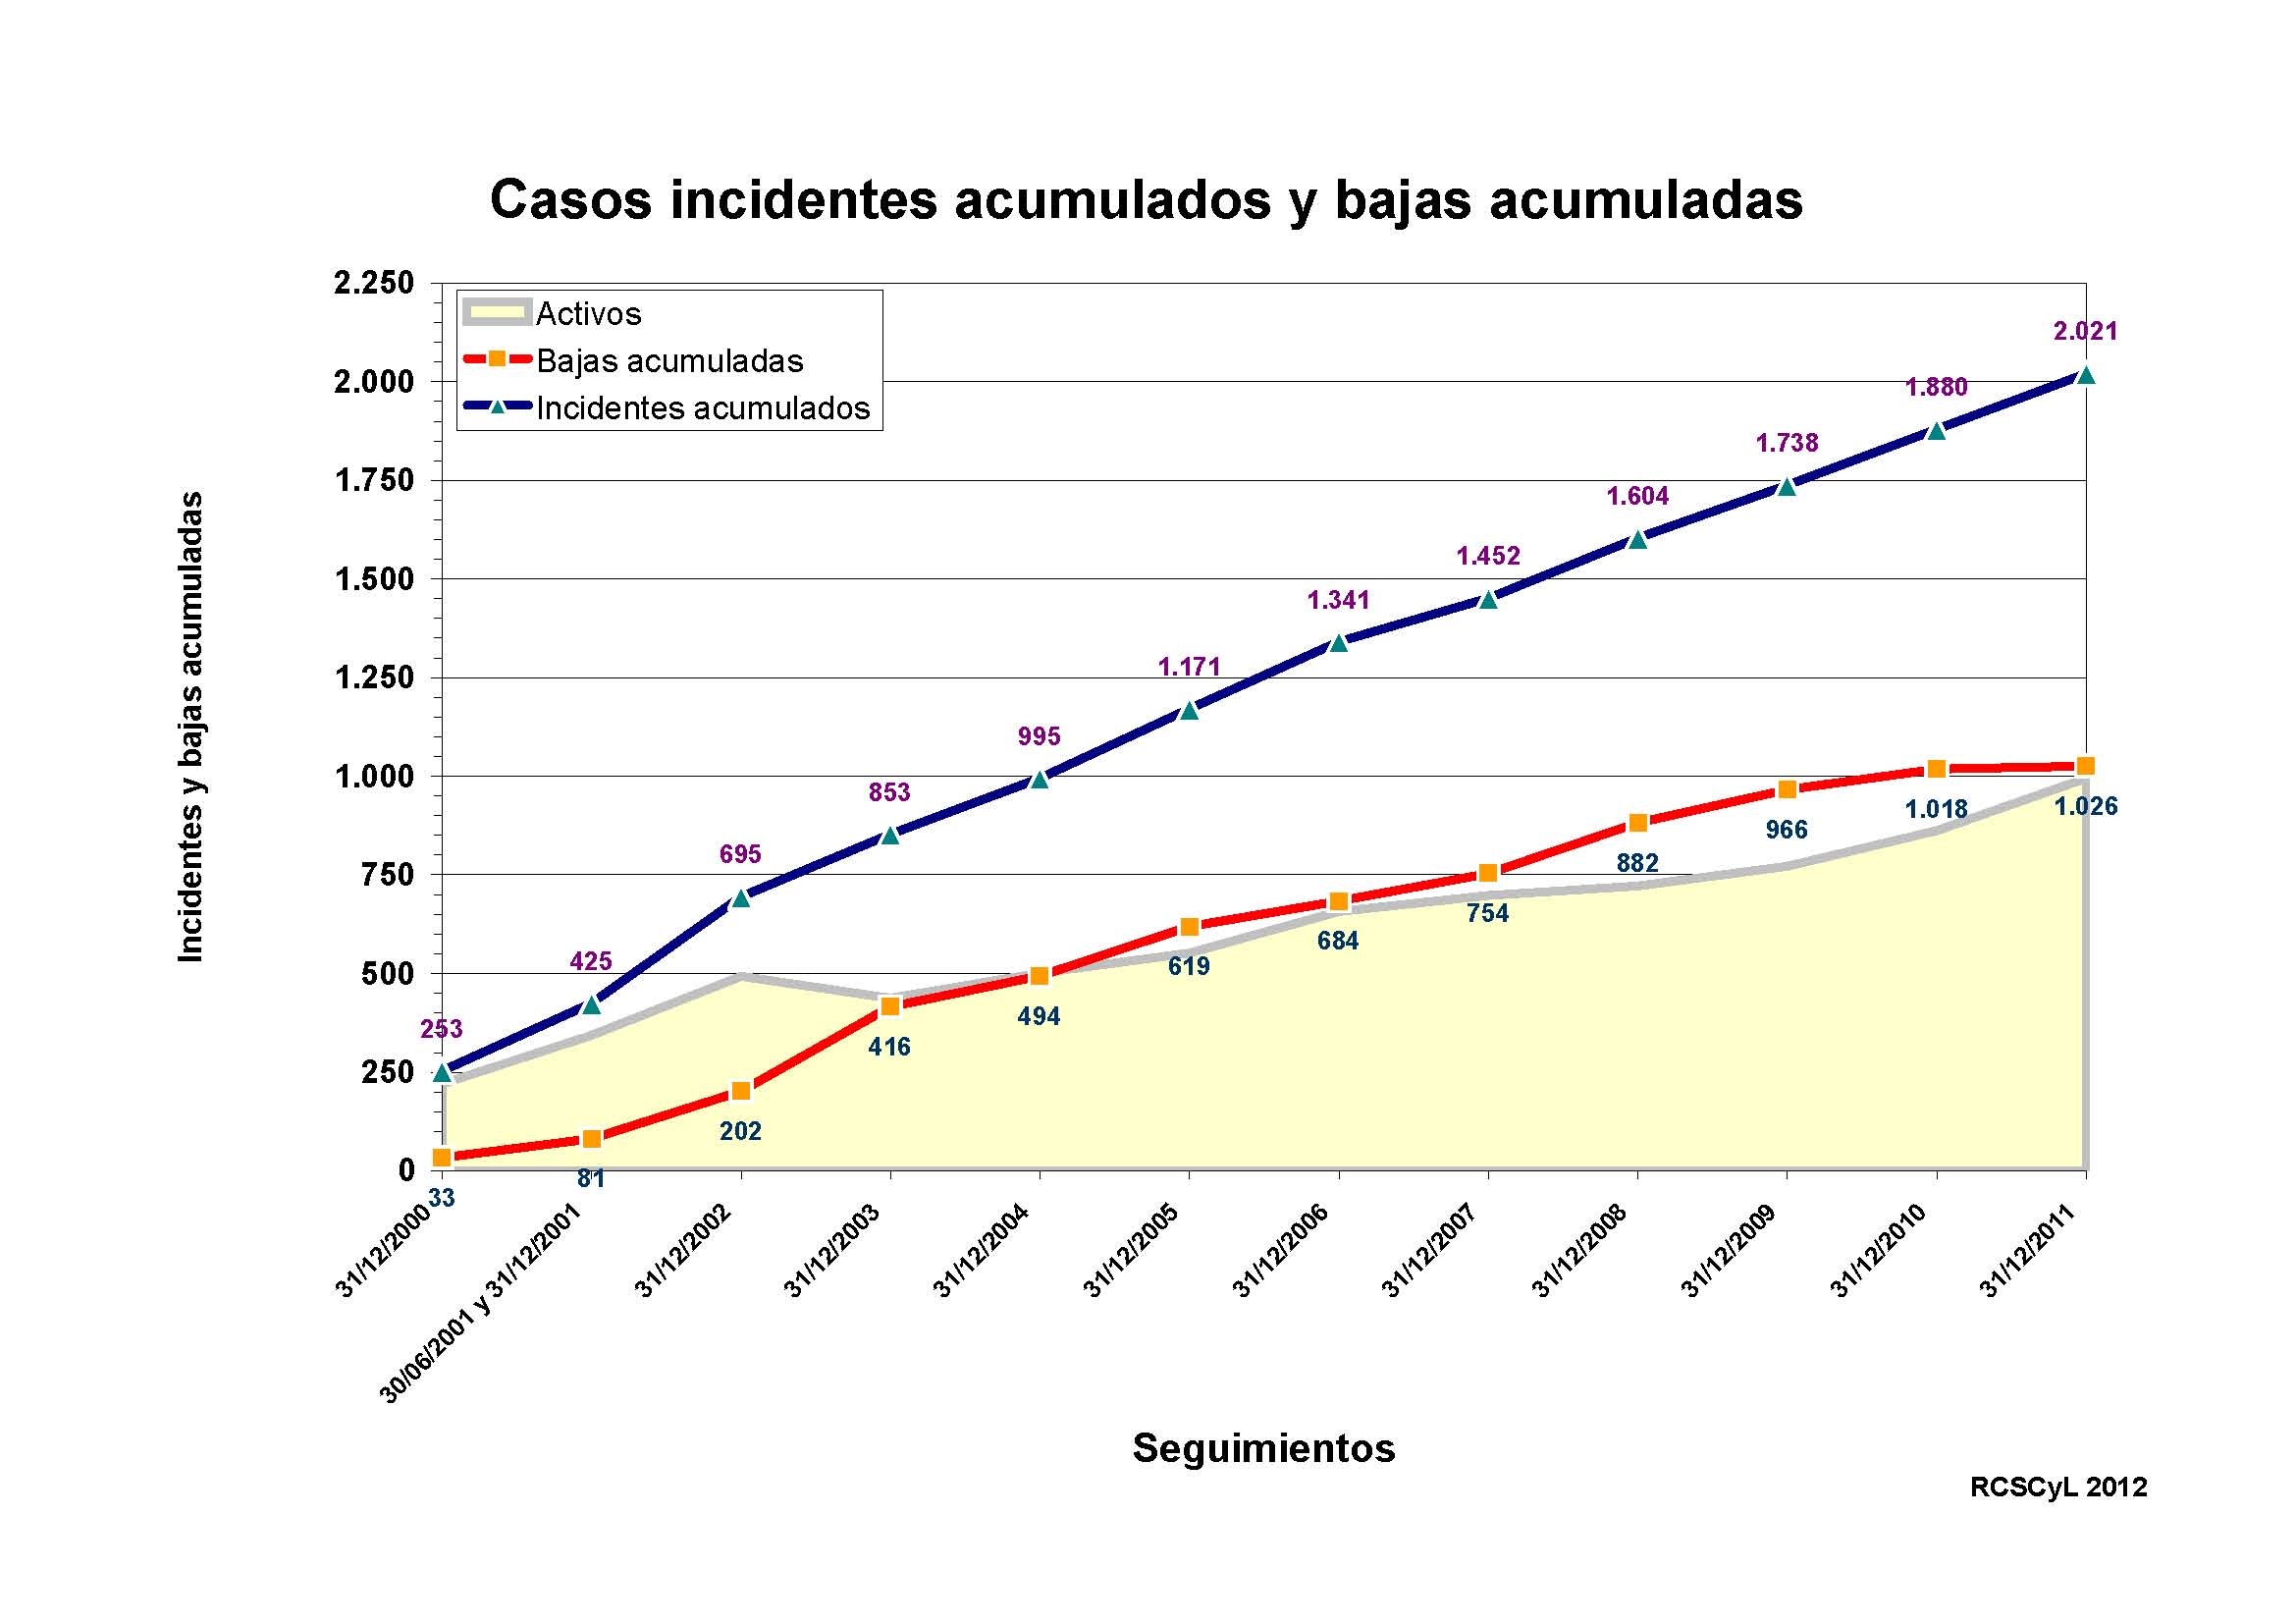 Figura 1. Casos incidentes y bajas acumulados.